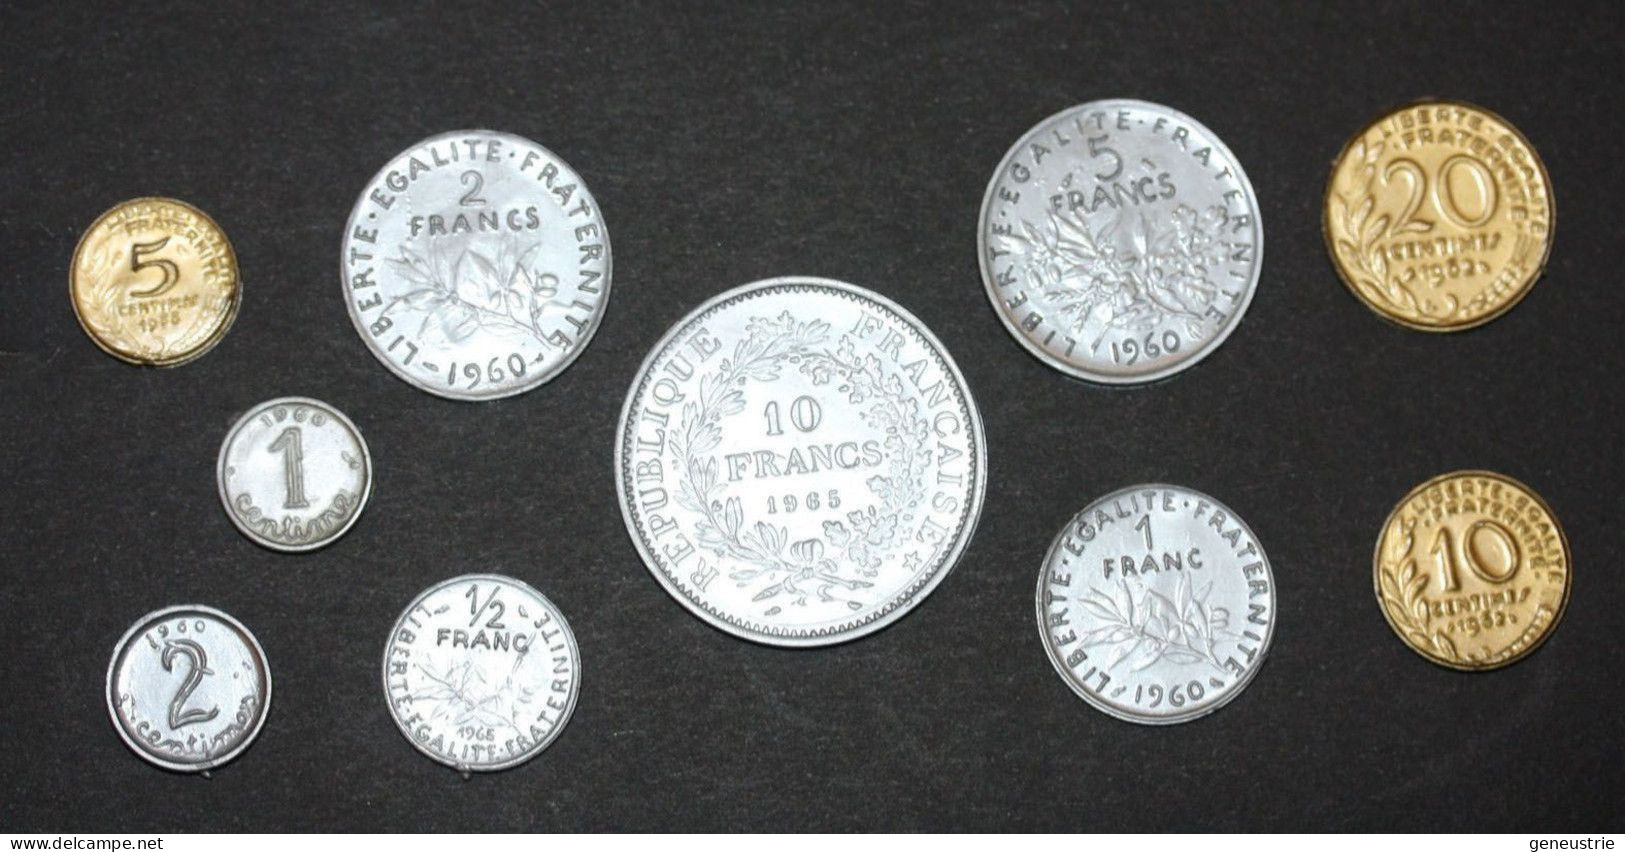 Série De 10 Monnaies Scolaire (1 Centime à 10 Francs) Jeton Plastique école En Francs - Années 60 - Coins School Token - Professionnels / De Société